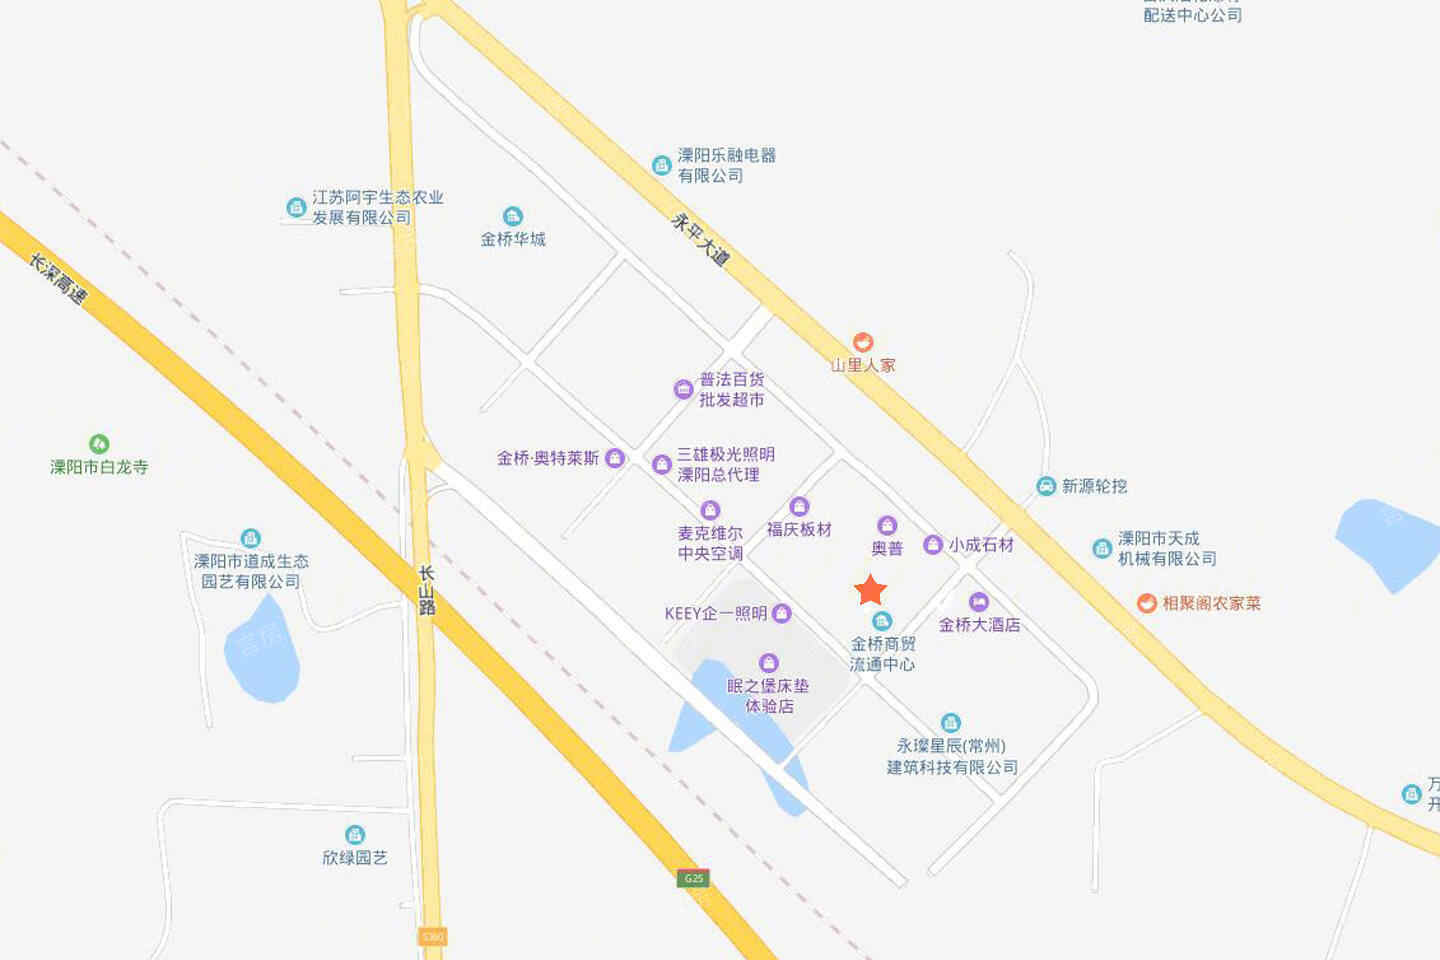 江苏金桥流通中心位置图